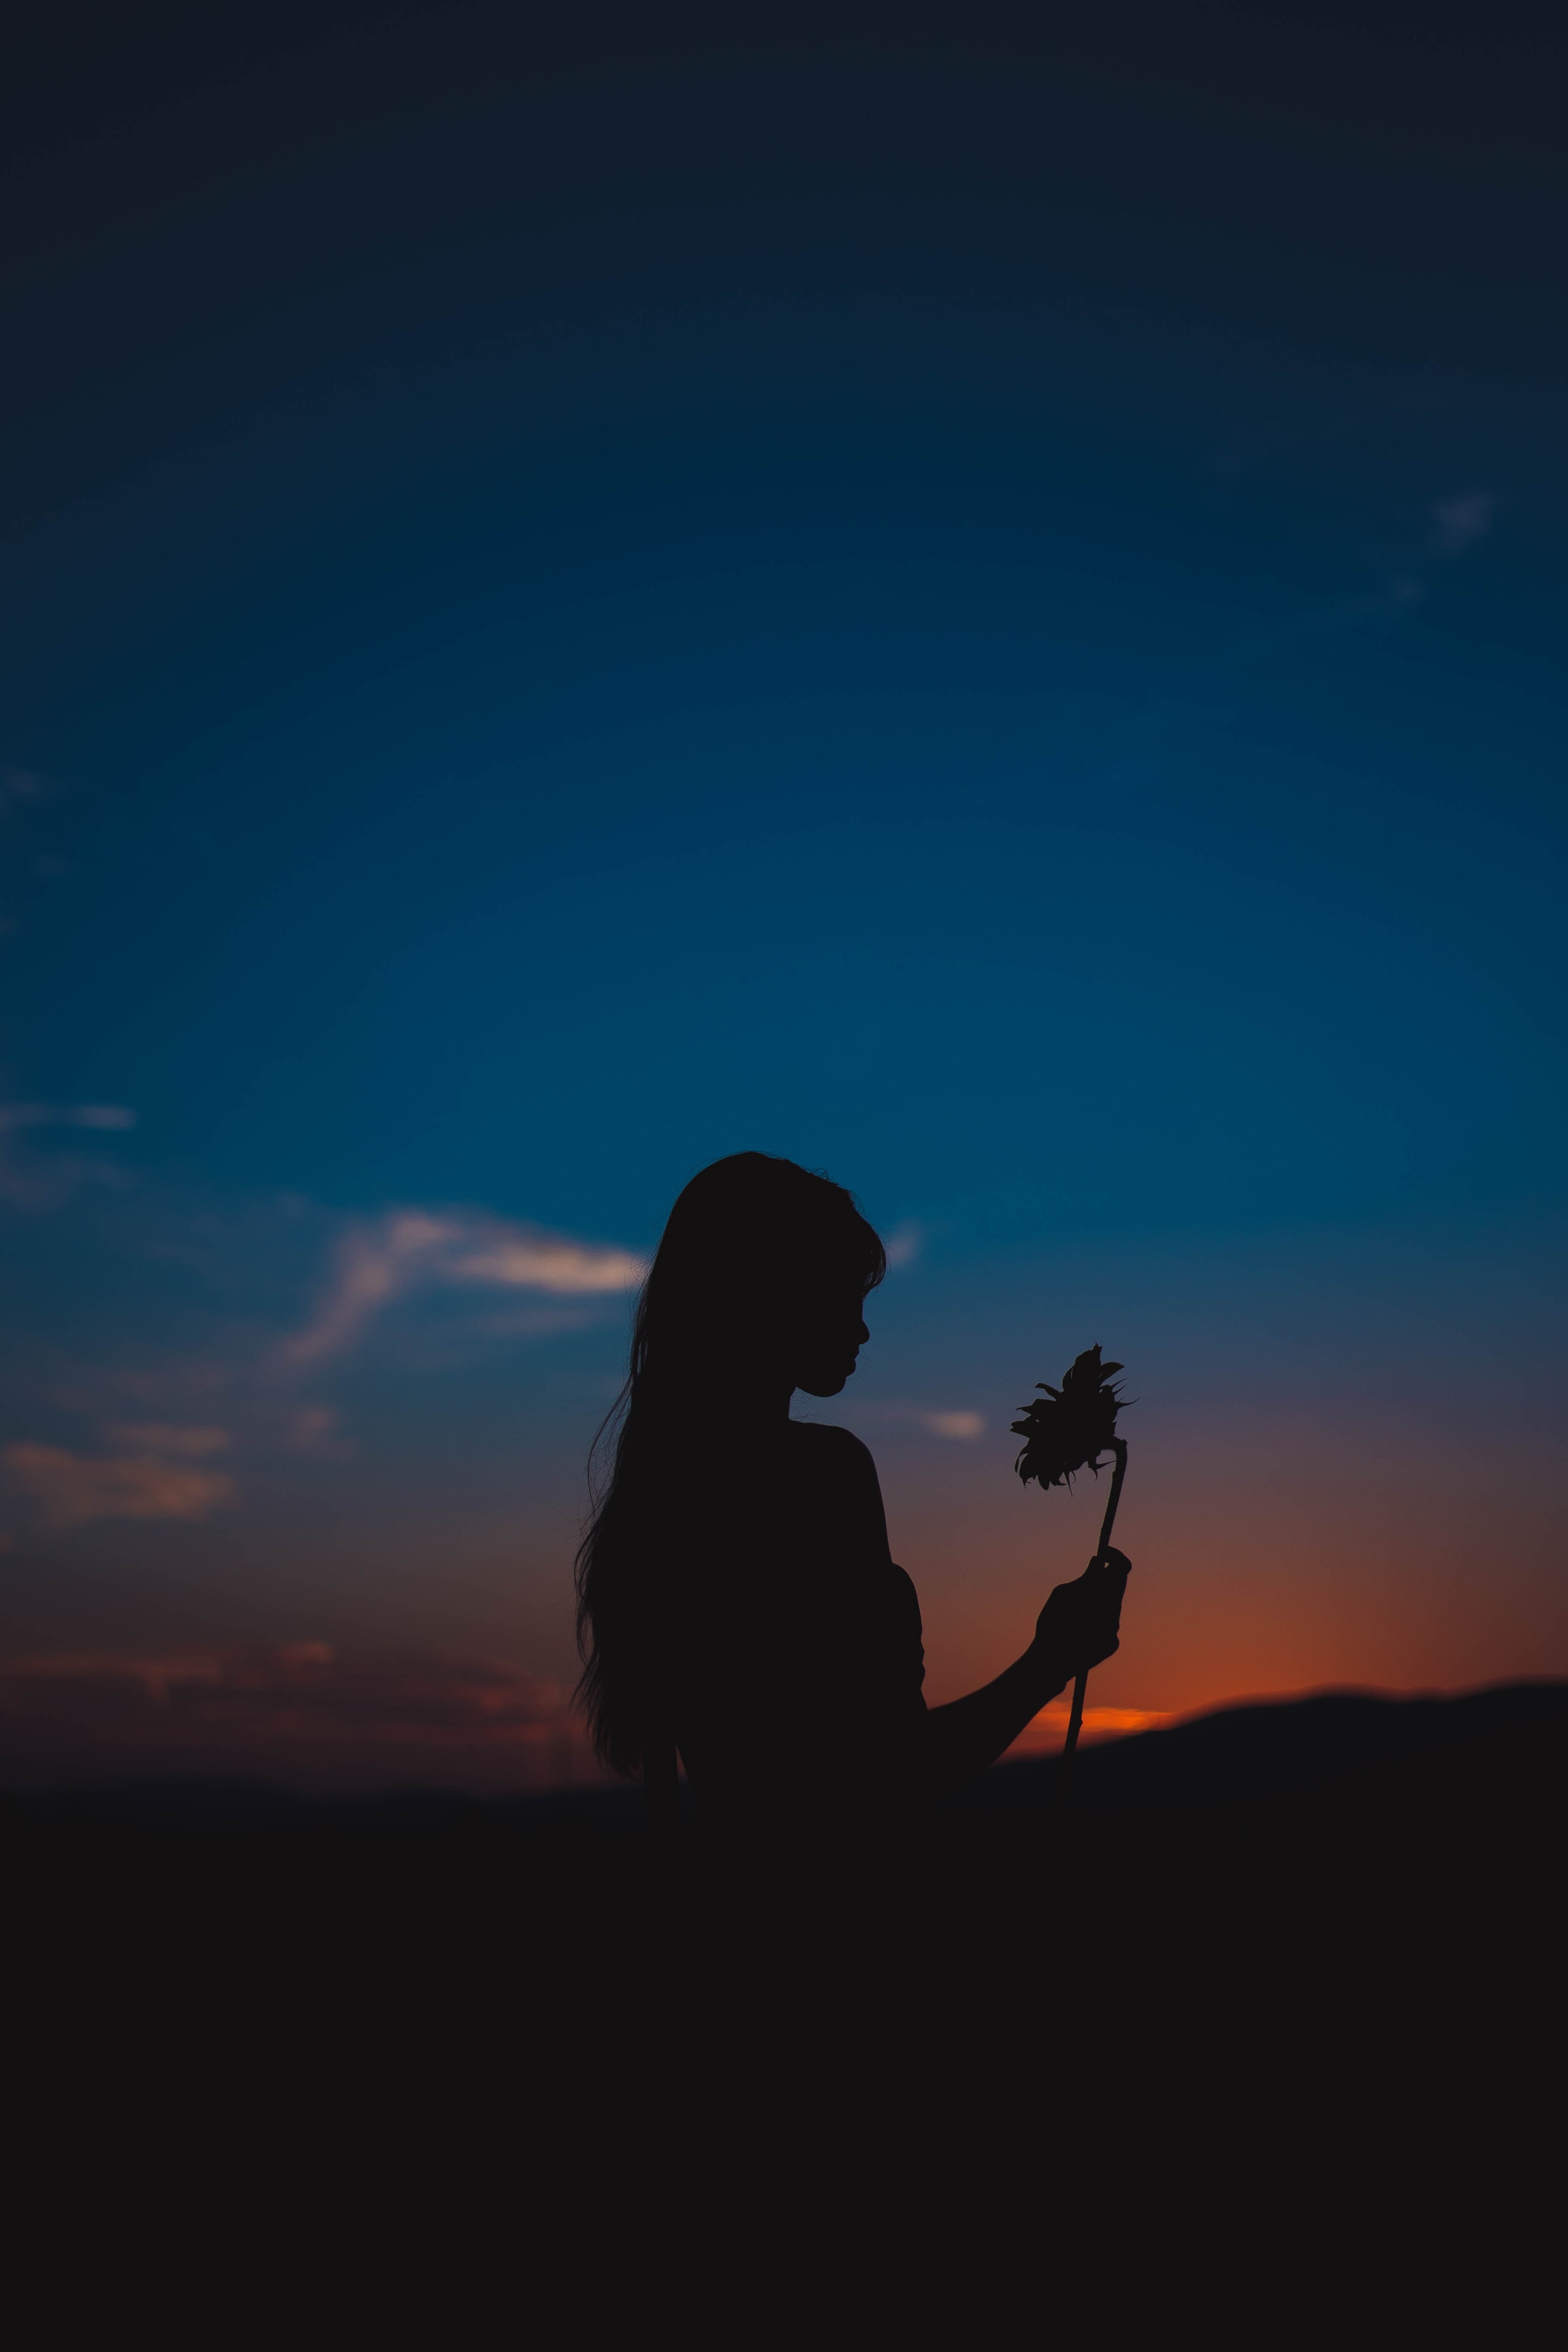 girl, sunflower, dark, sunset, flower, silhouette wallpaper for mobile